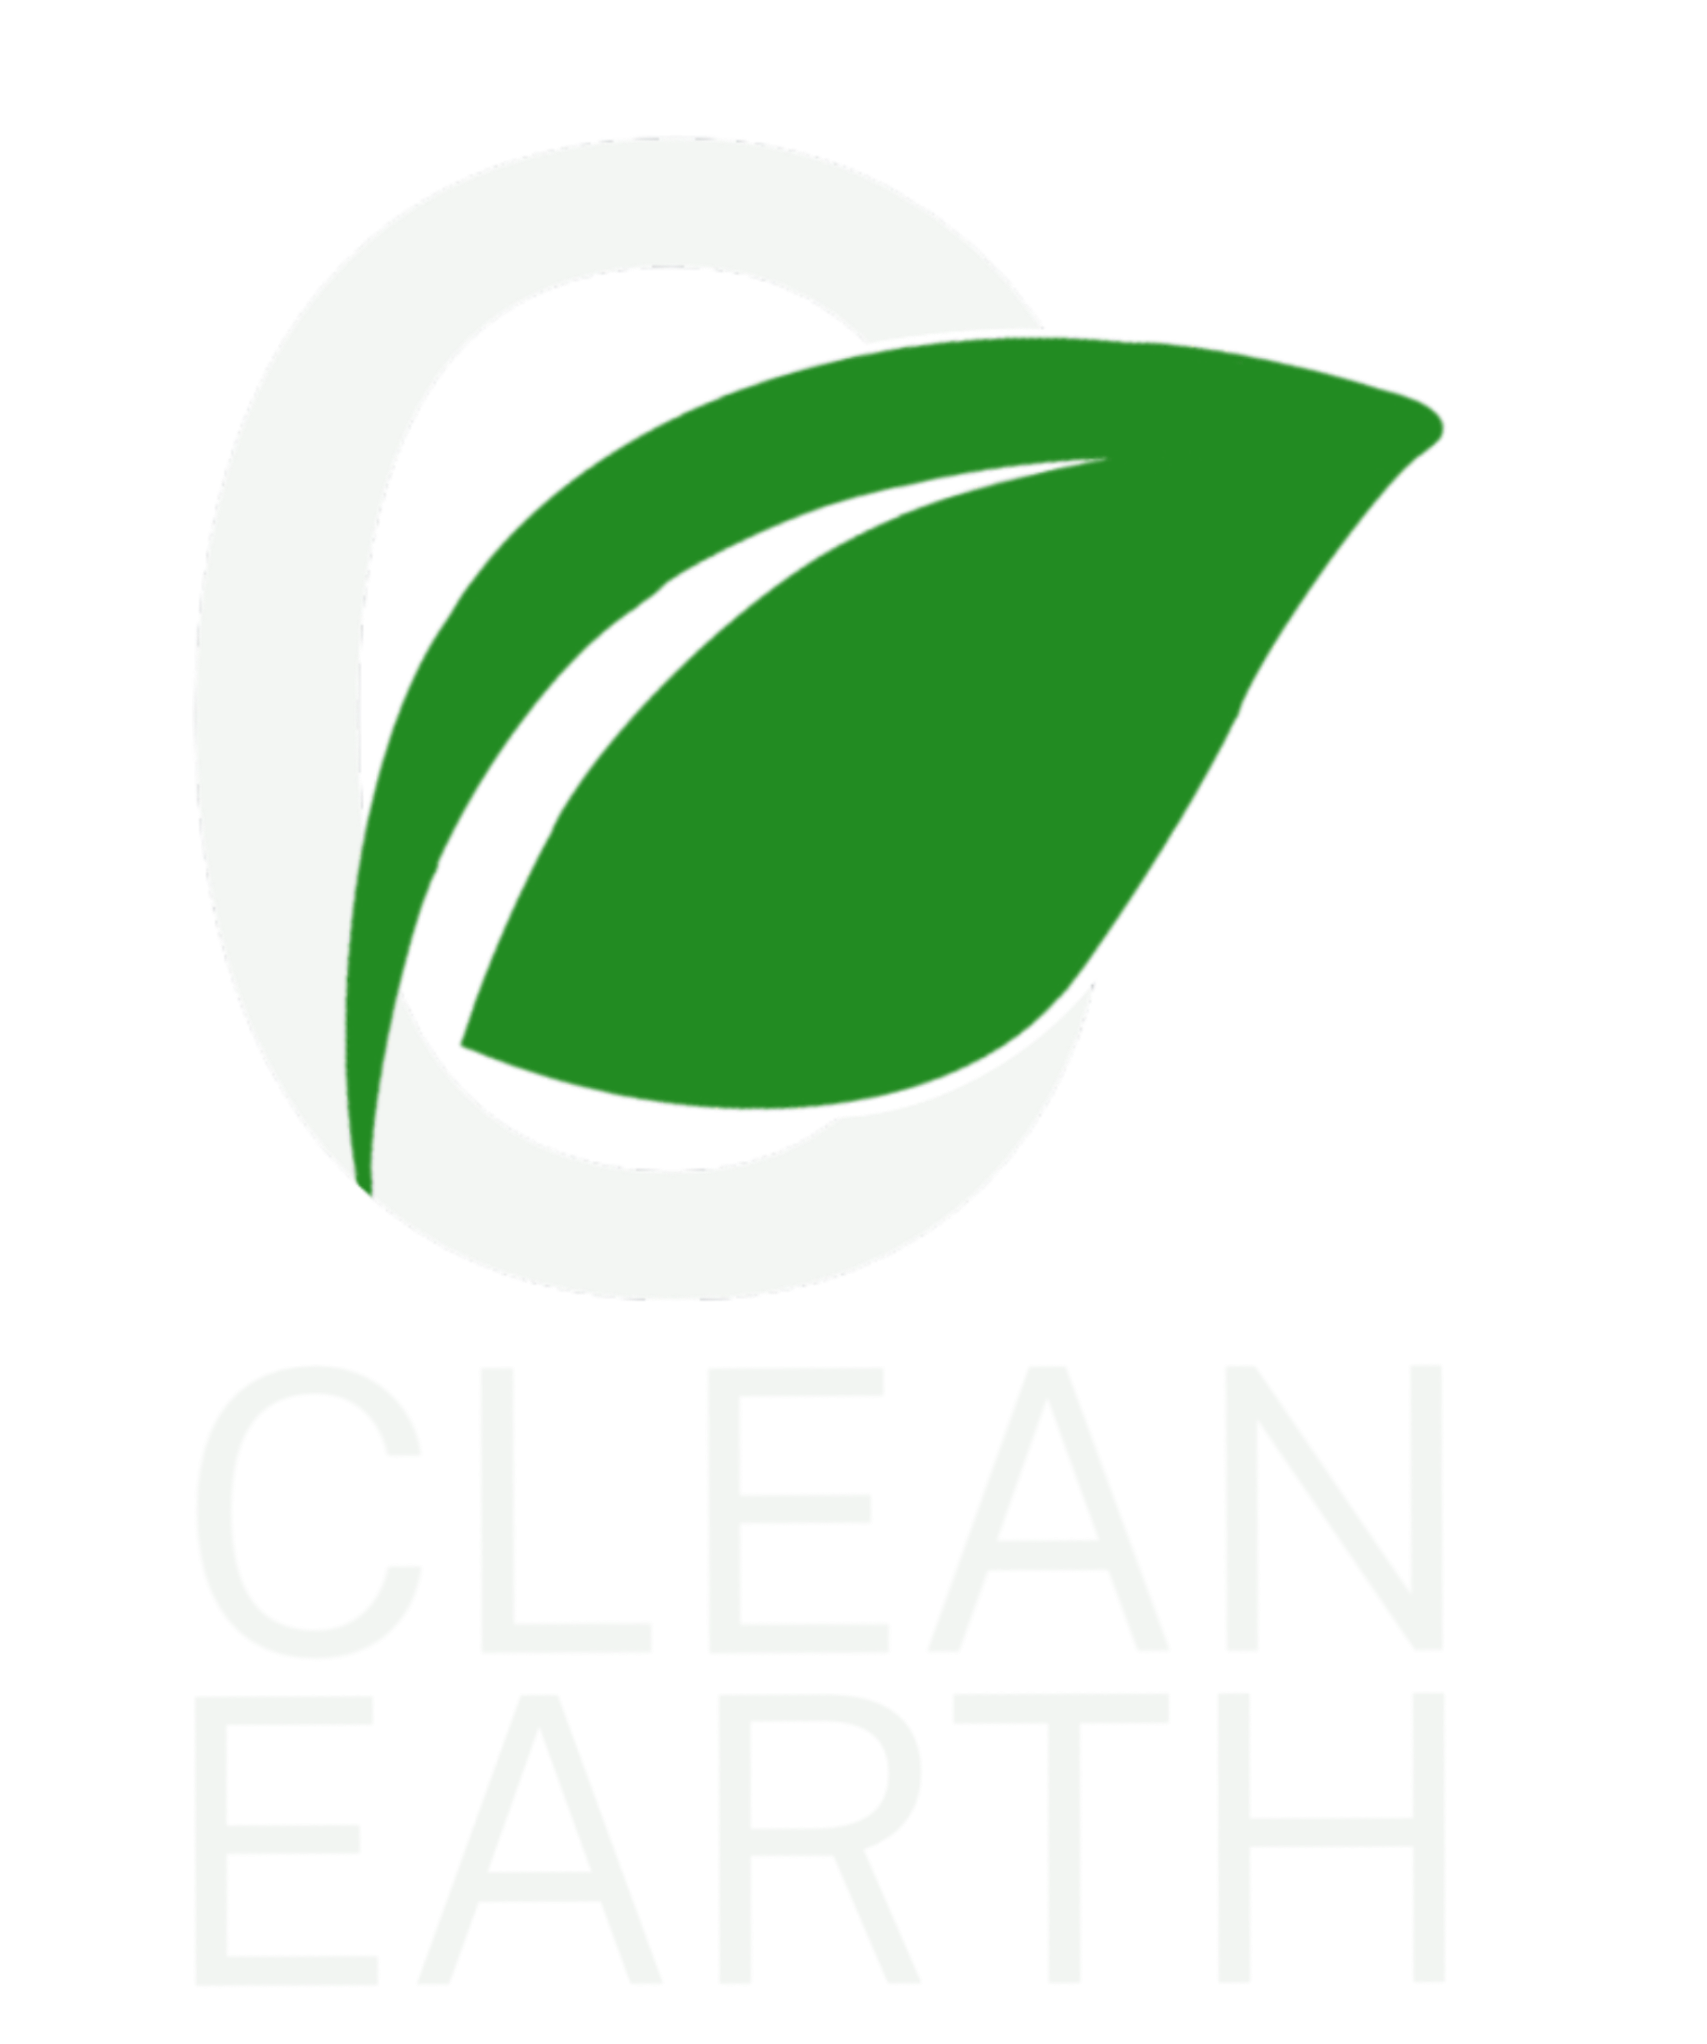 Clean Eearth logo by Talia Milardo